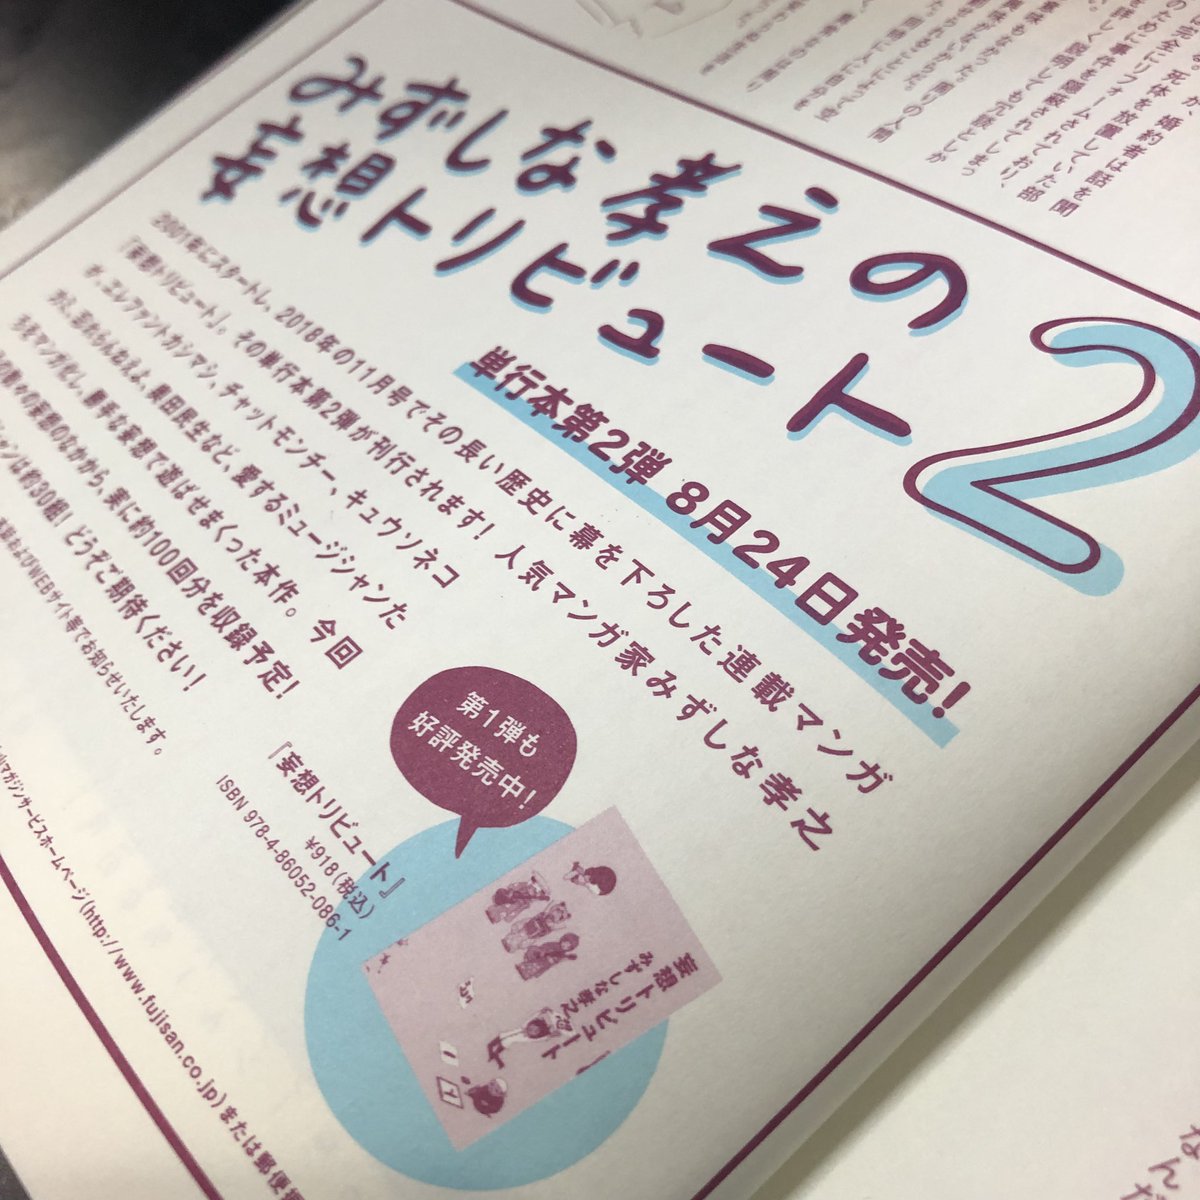 ロッキンオンJAPANにて告知されてましたが「妄想トリビュート2」8月24日発売となります。10年越しの第2巻です!描き下ろしのページもたくさんありますのでよろしくお願いします! 